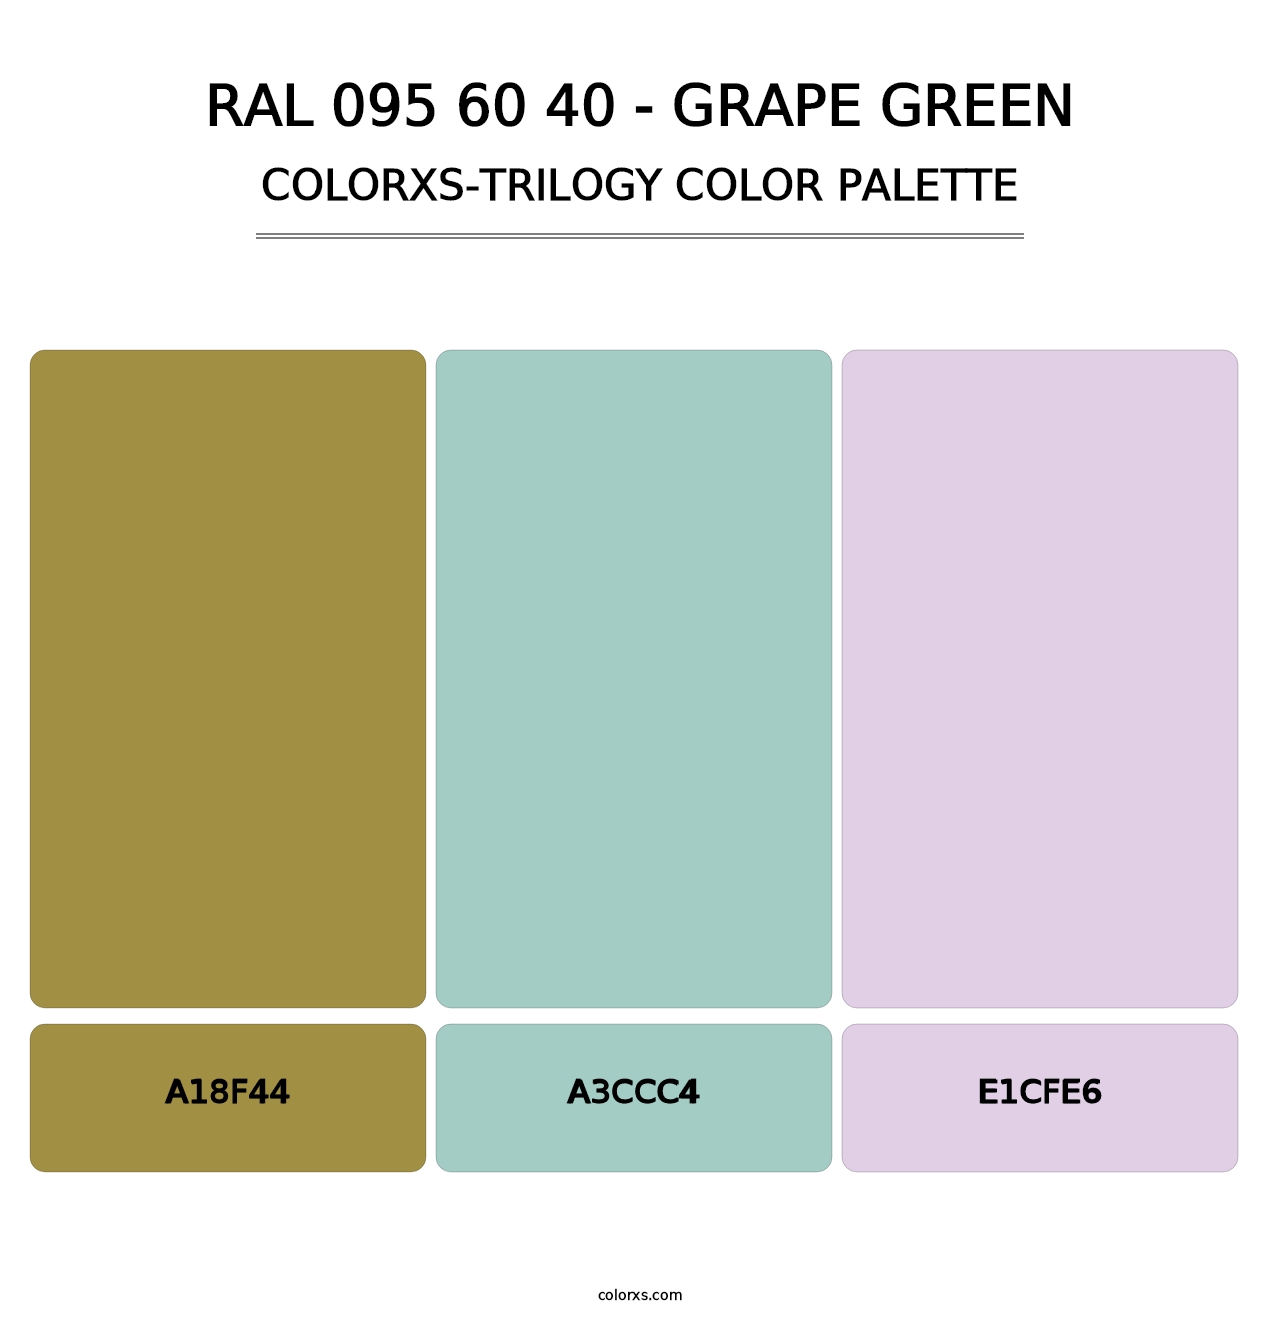 RAL 095 60 40 - Grape Green - Colorxs Trilogy Palette